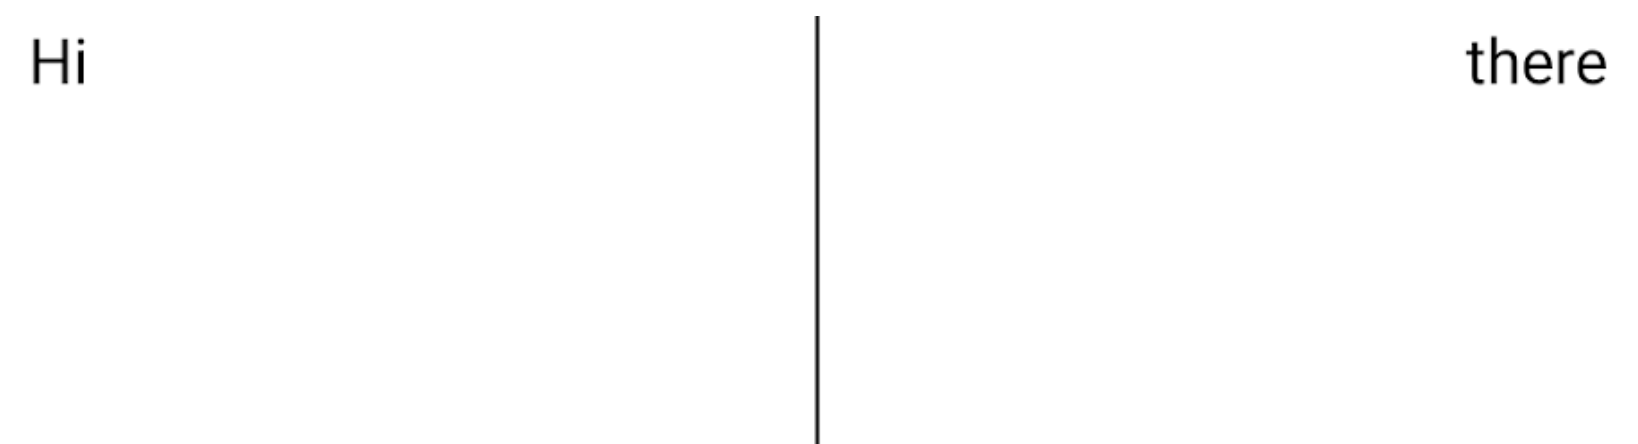 两个文本元素并排显示，中间用分隔线隔开，但分隔线向下延伸到文本底部下方